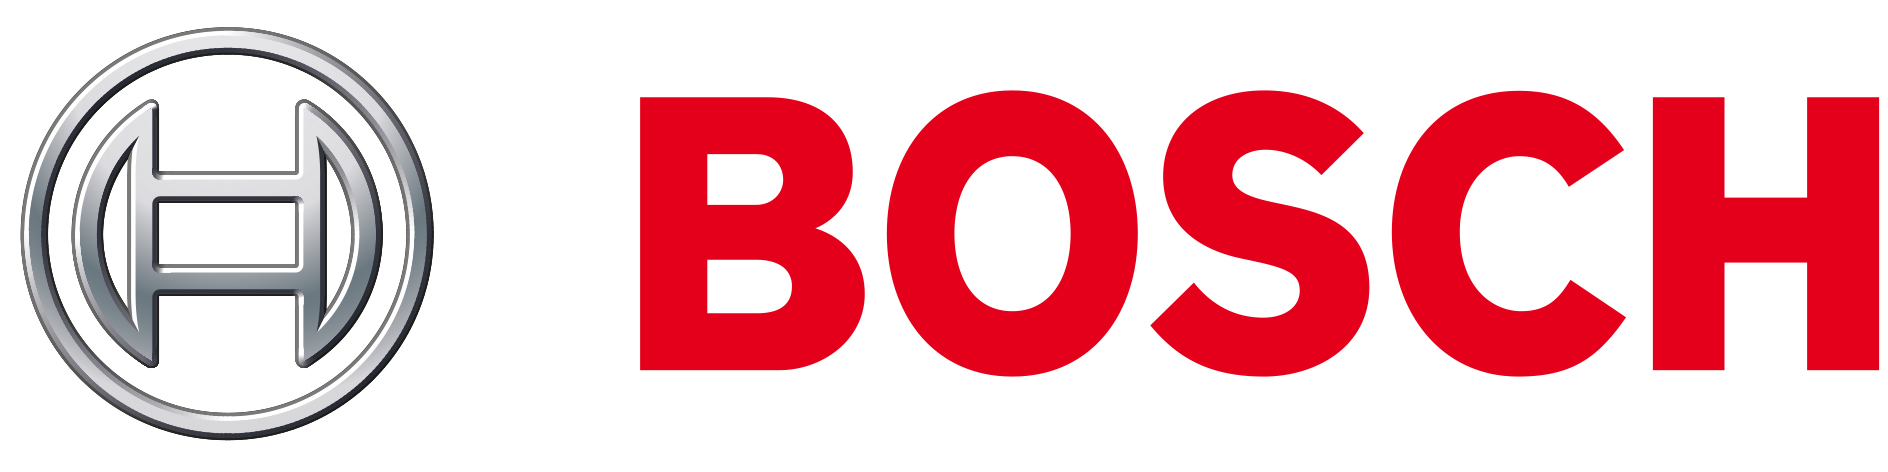 Bosch - Staubsauger, rot